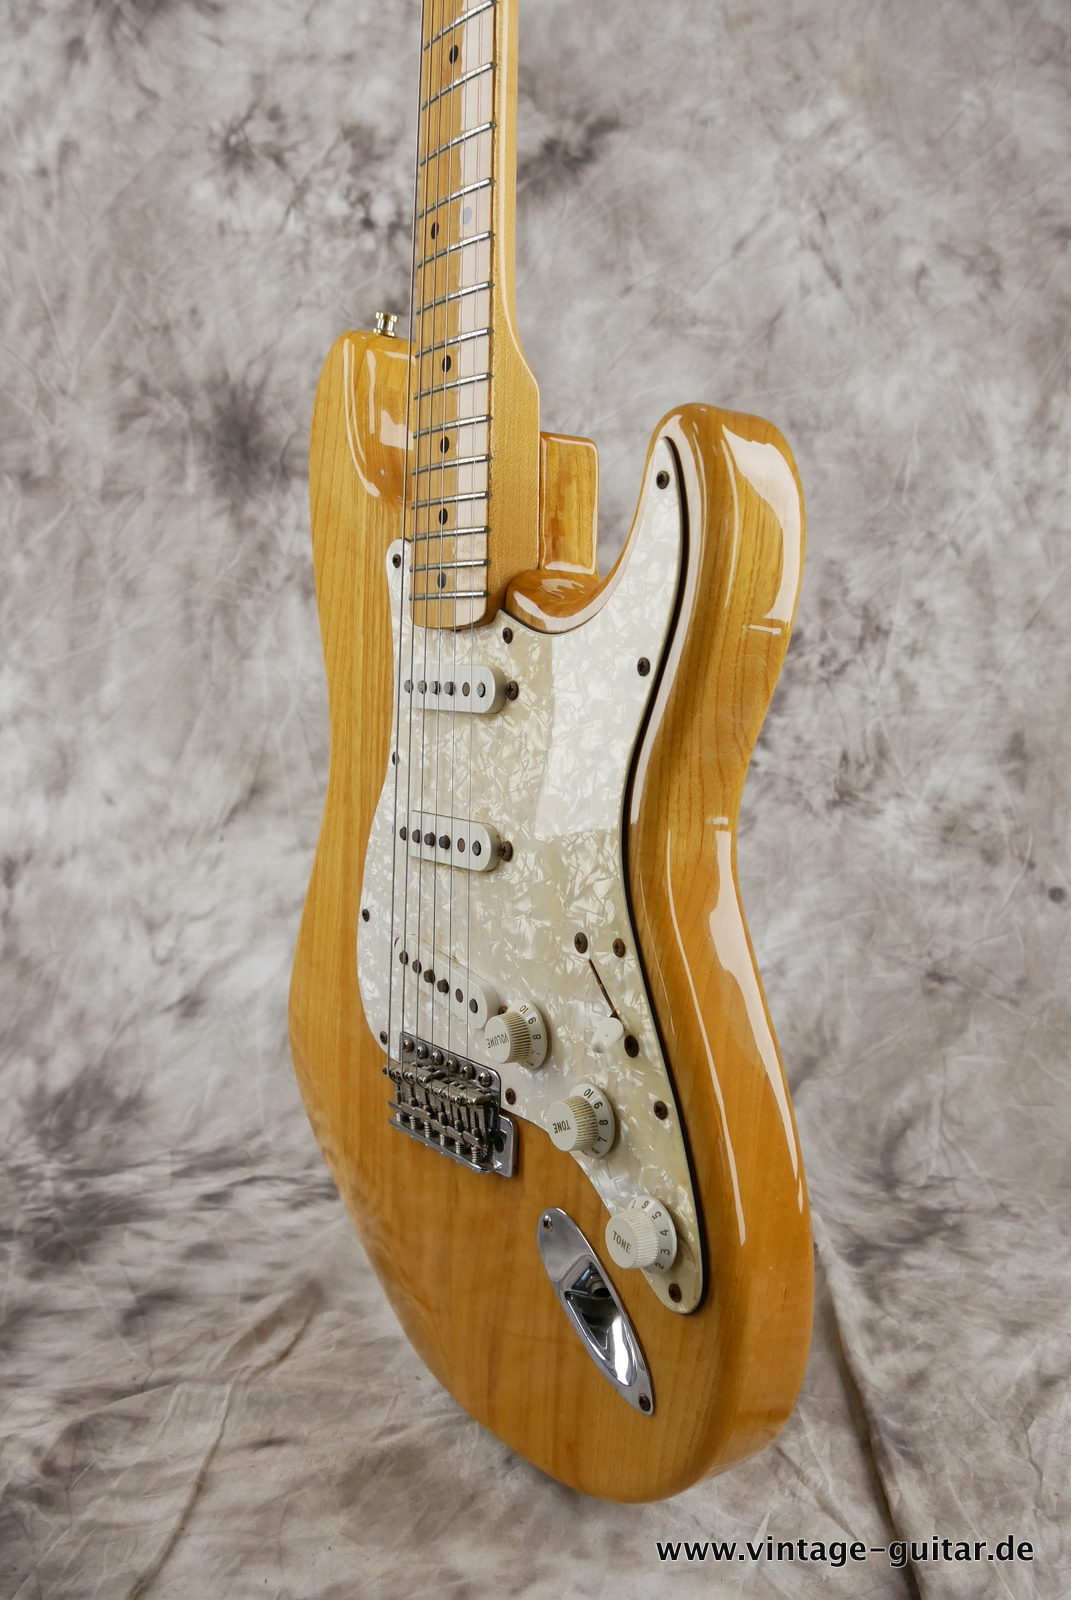 Fender_Stratocaster_70s_reissue_maple_neck_1999_Mexico-006.JPG